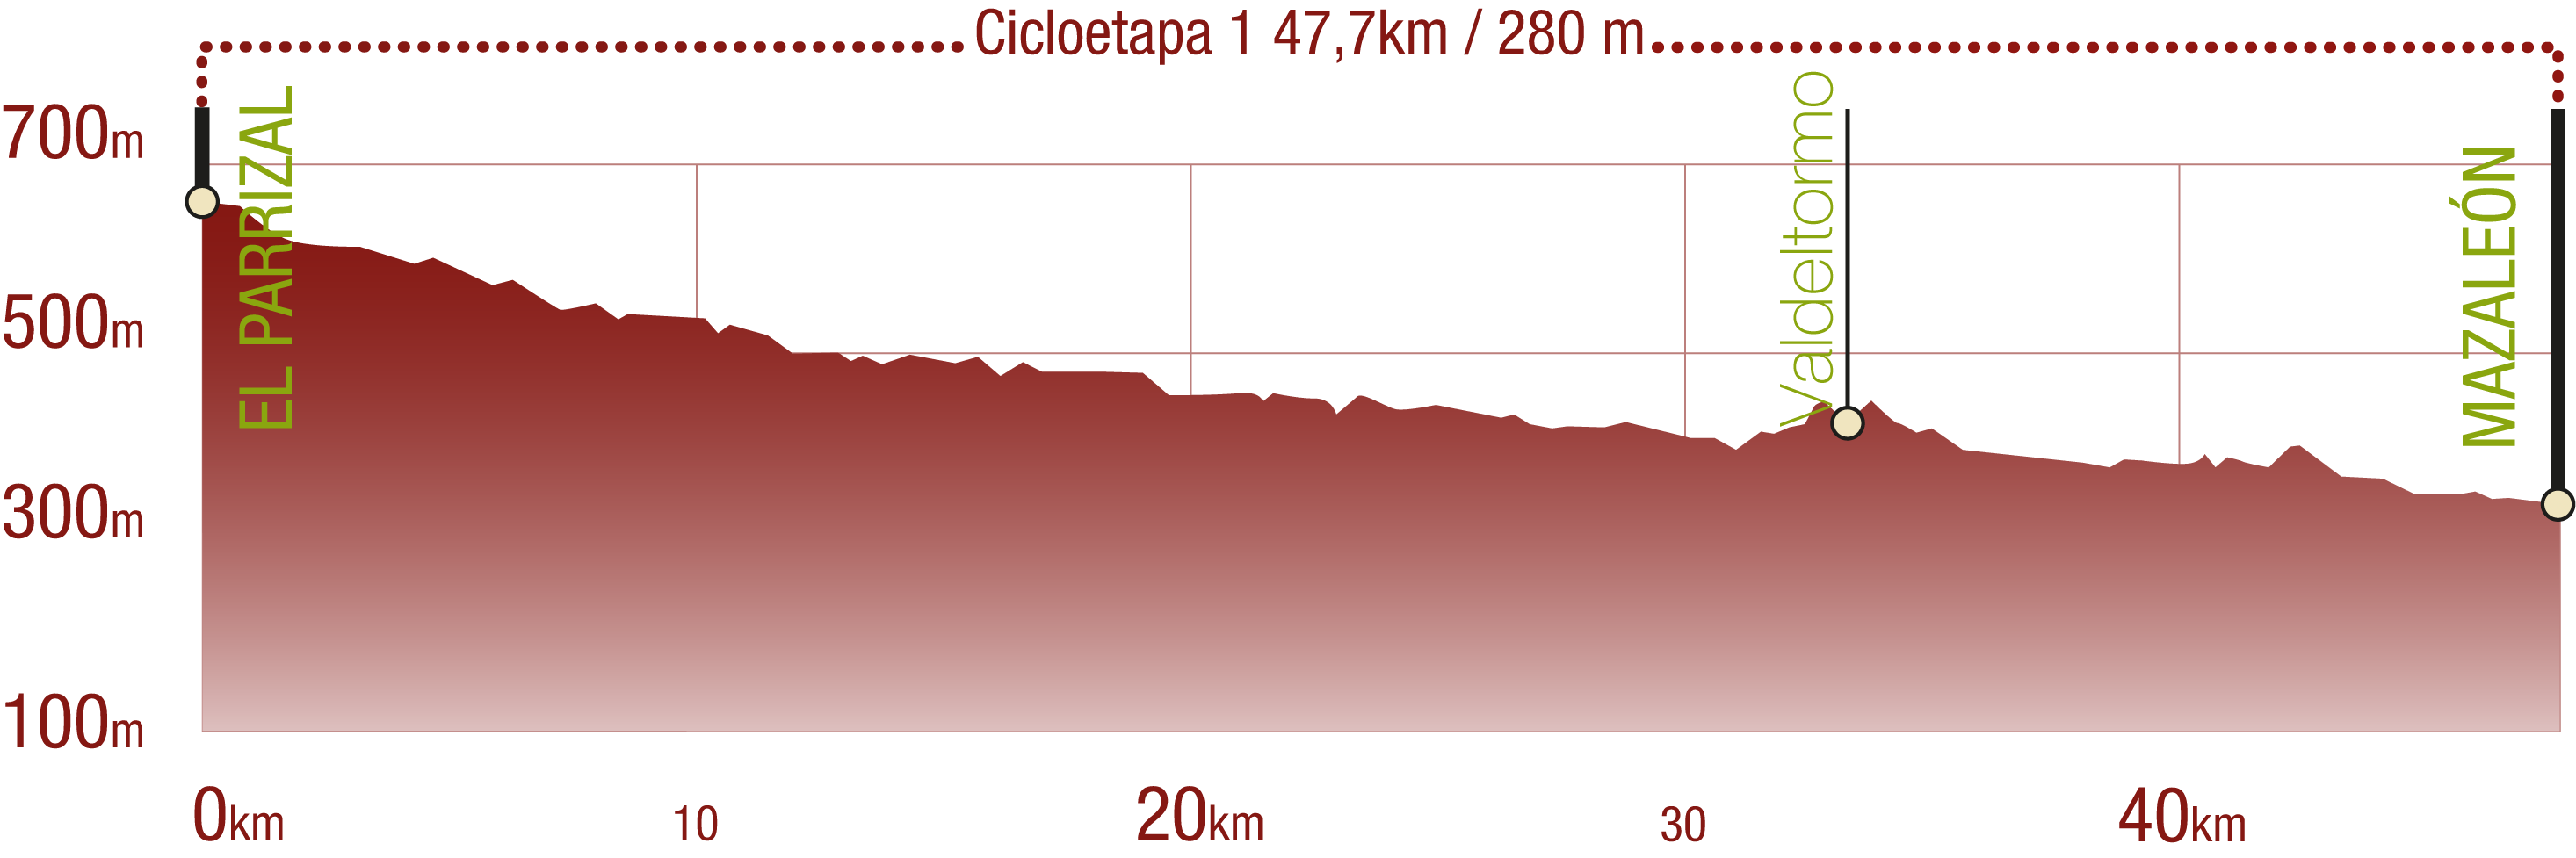 Perfil 
Perfil de la Cicloetapa 1 del CN Matarraña - Algars: 47,7 km / Desnivel de subida 280 m

